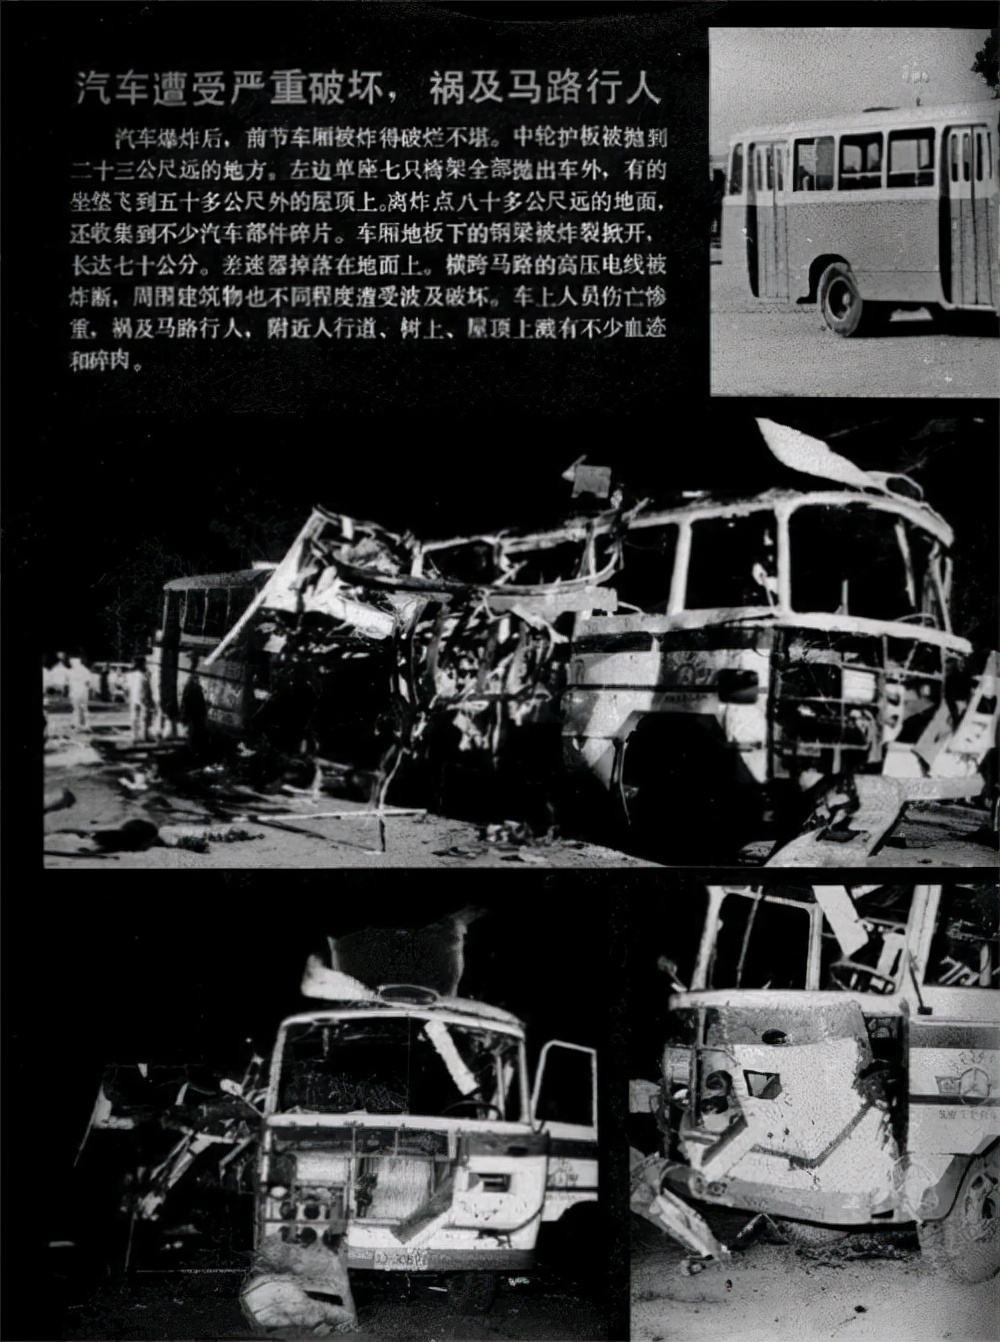 1981年厦门公交车爆炸案,警方怀疑凶手在车上,13个月后真相大白